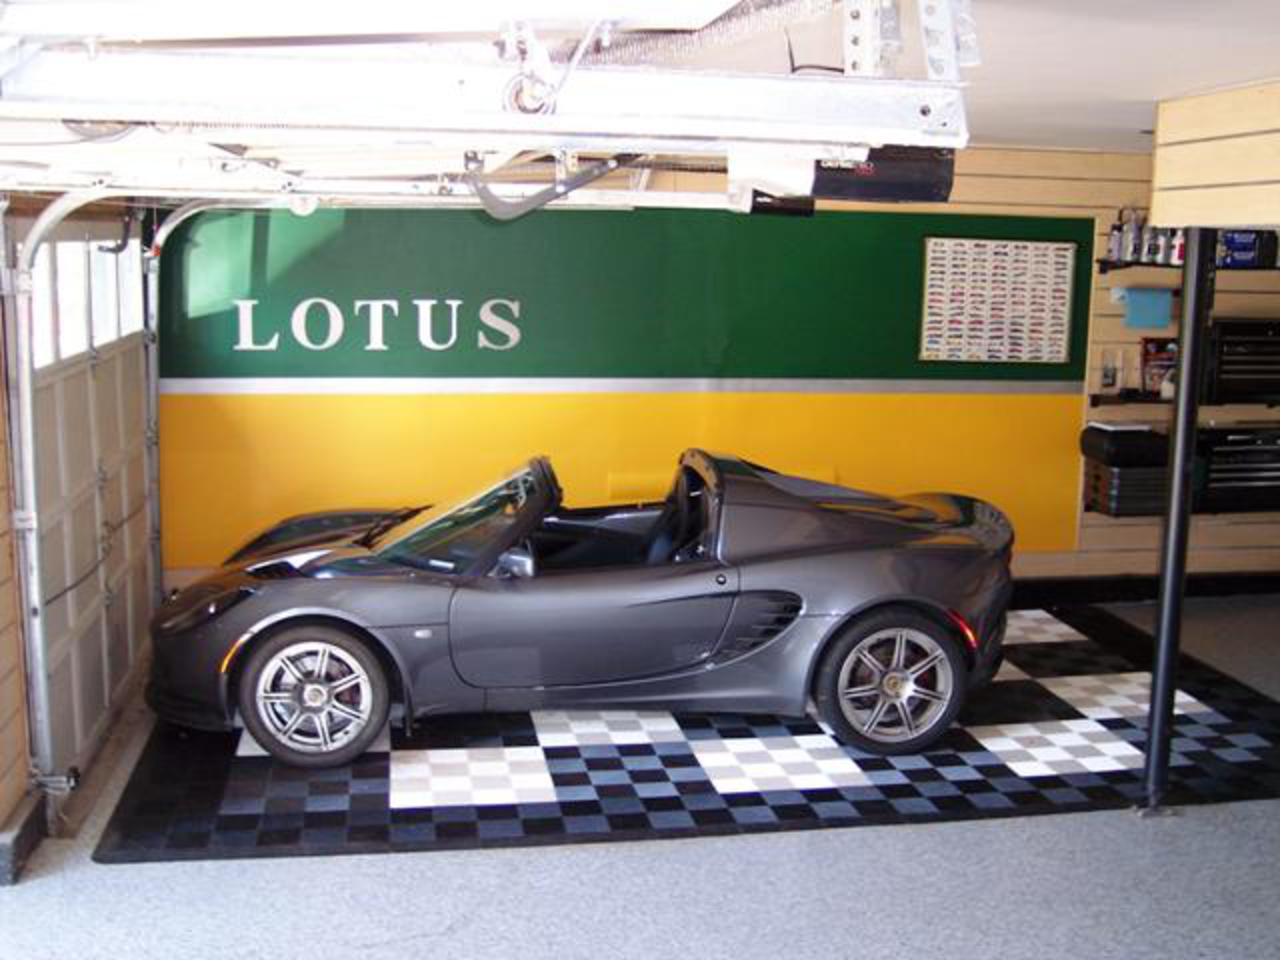 Free Download 2005 Lotus Elise 111r 1 4 Mile Drag Racing Timeslip ...